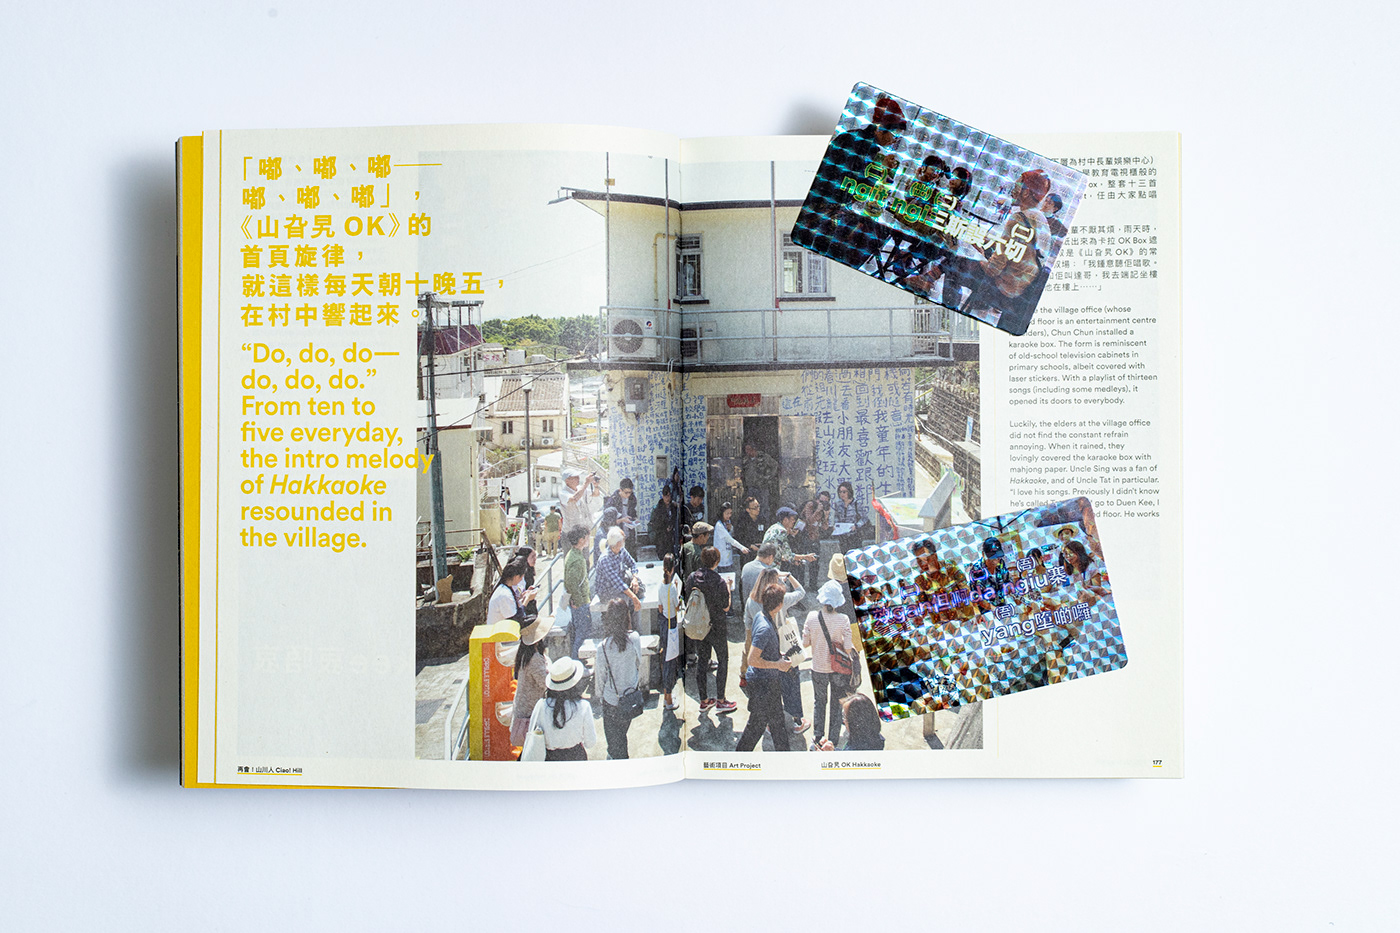 art book design community editorial editorial design  graphic design  publication